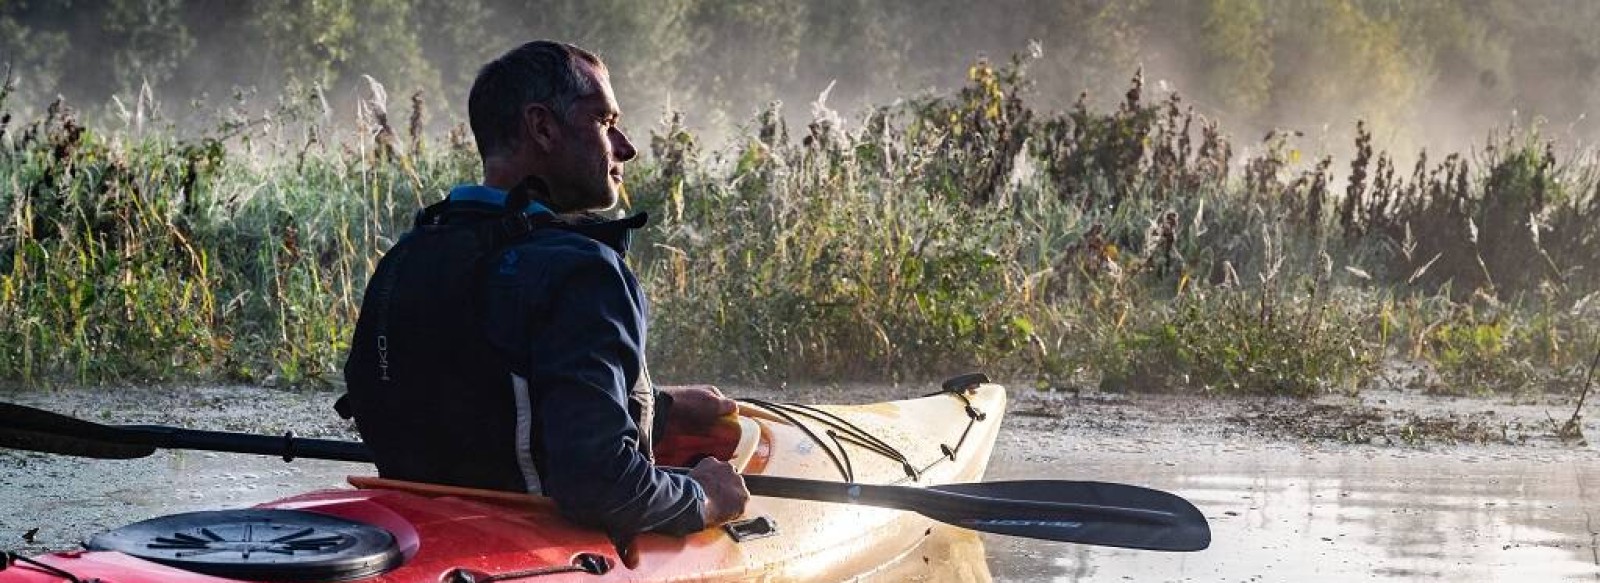 Balade en canoe sur la Loire avec John Patach